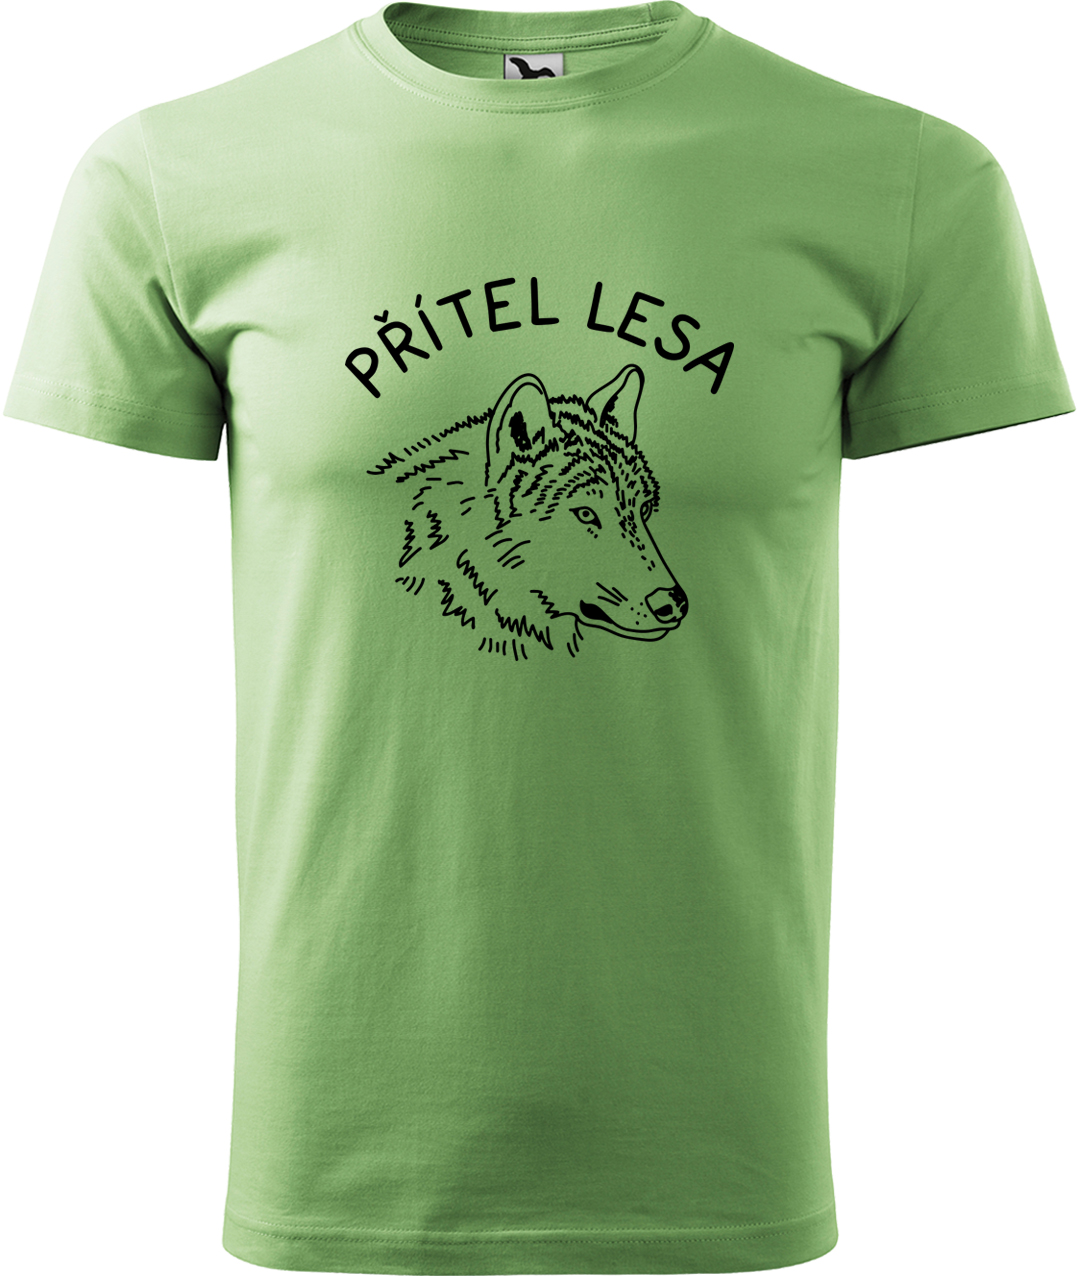 Pánské tričko s vlkem - Přítel lesa Velikost: M, Barva: Trávově zelená (39), Střih: pánský